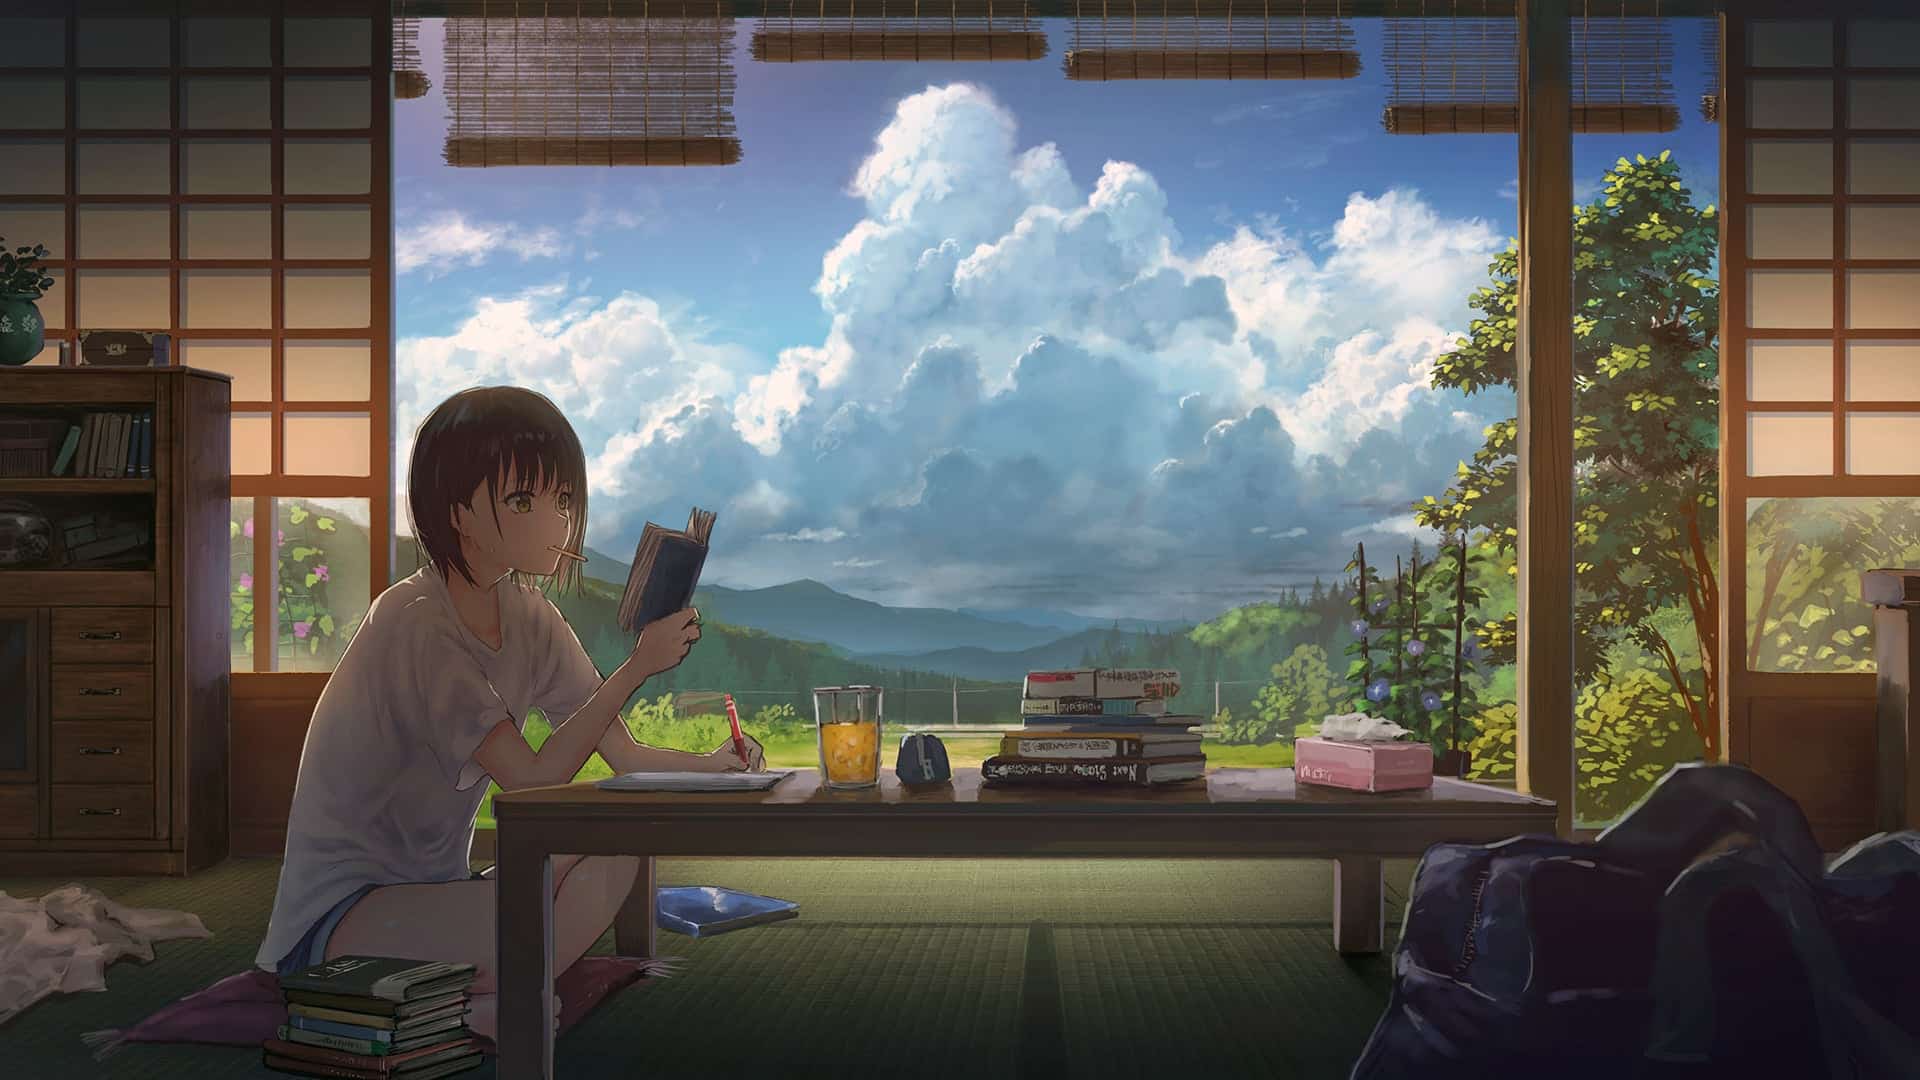 100 Hình nền máy tính chill 4K Anime đẹp cute  Tải miễn phí